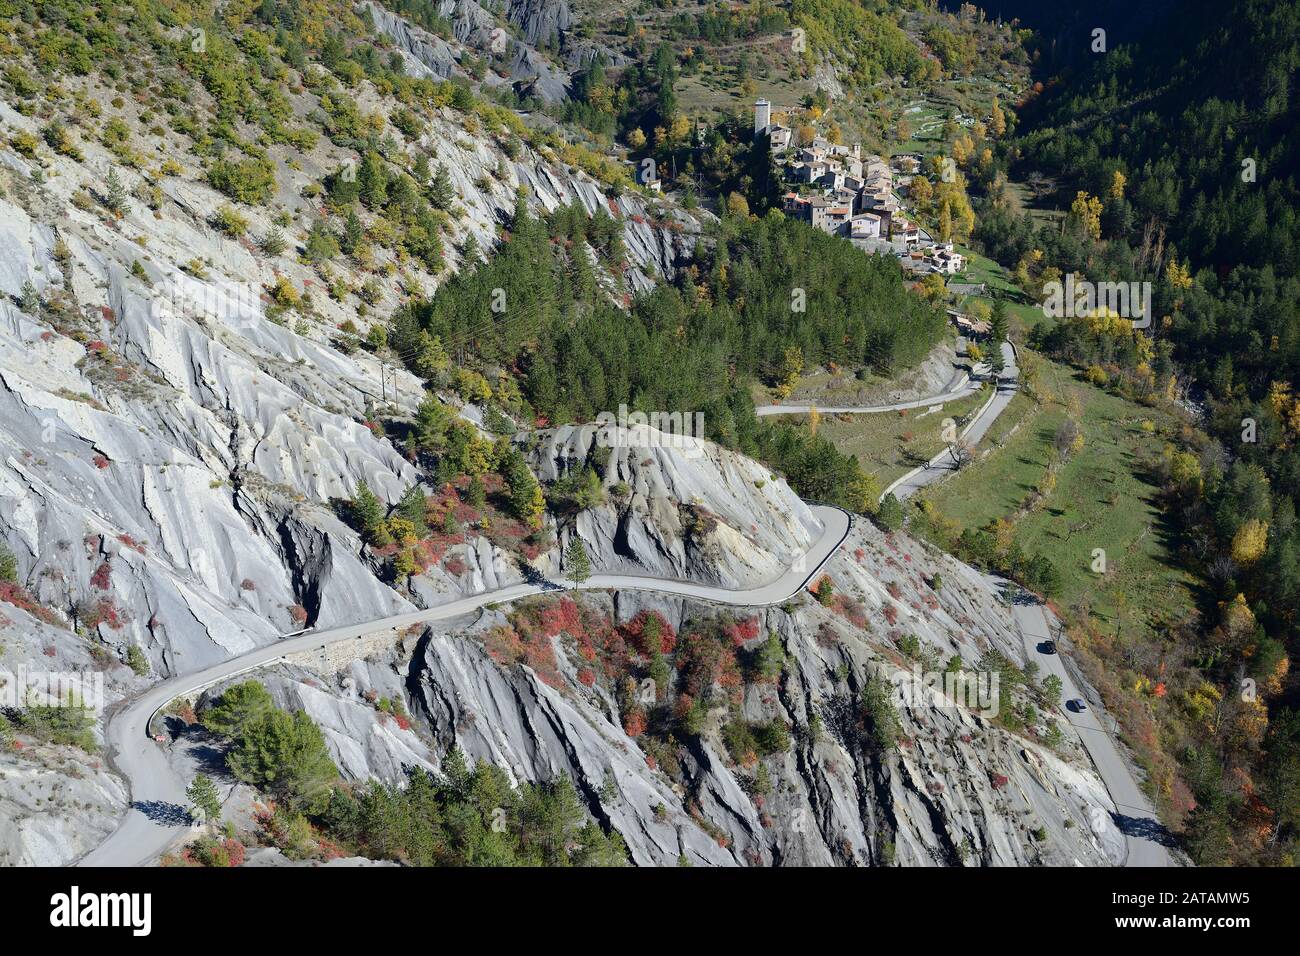 VISTA AEREA. Solo strada di accesso, attraverso un paesaggio geologicamente interessante per un villaggio remoto. Puget-Rostang, il backcountry della Costa Azzurra, Francia. Foto Stock